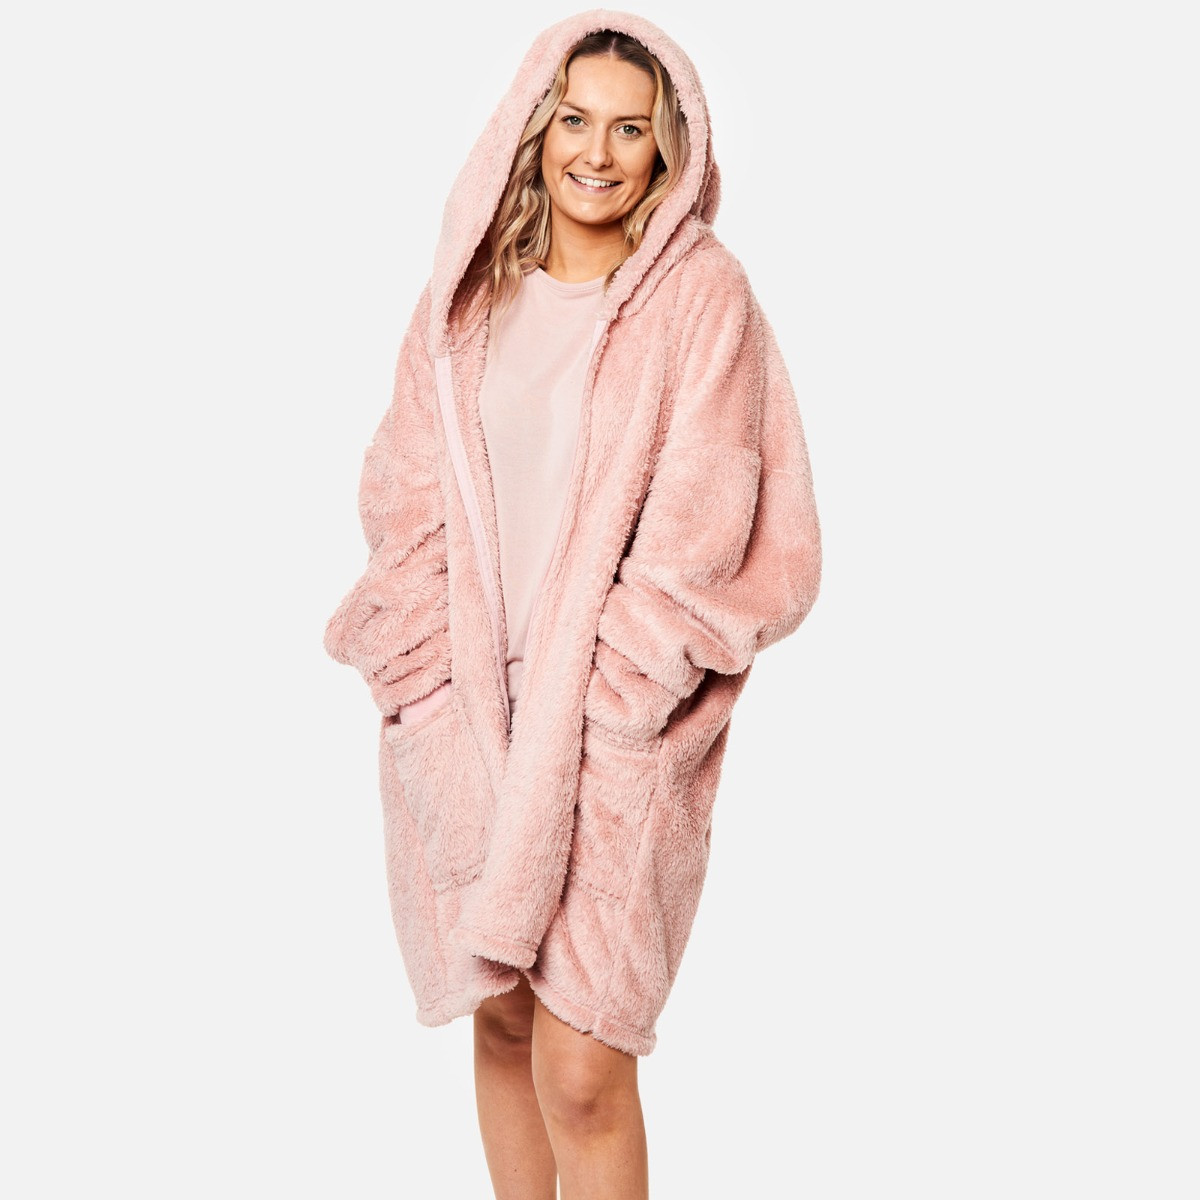 Brentfords Teddy Fleece Zip Up Hoodie Blanket, Adults - Blush Pink>